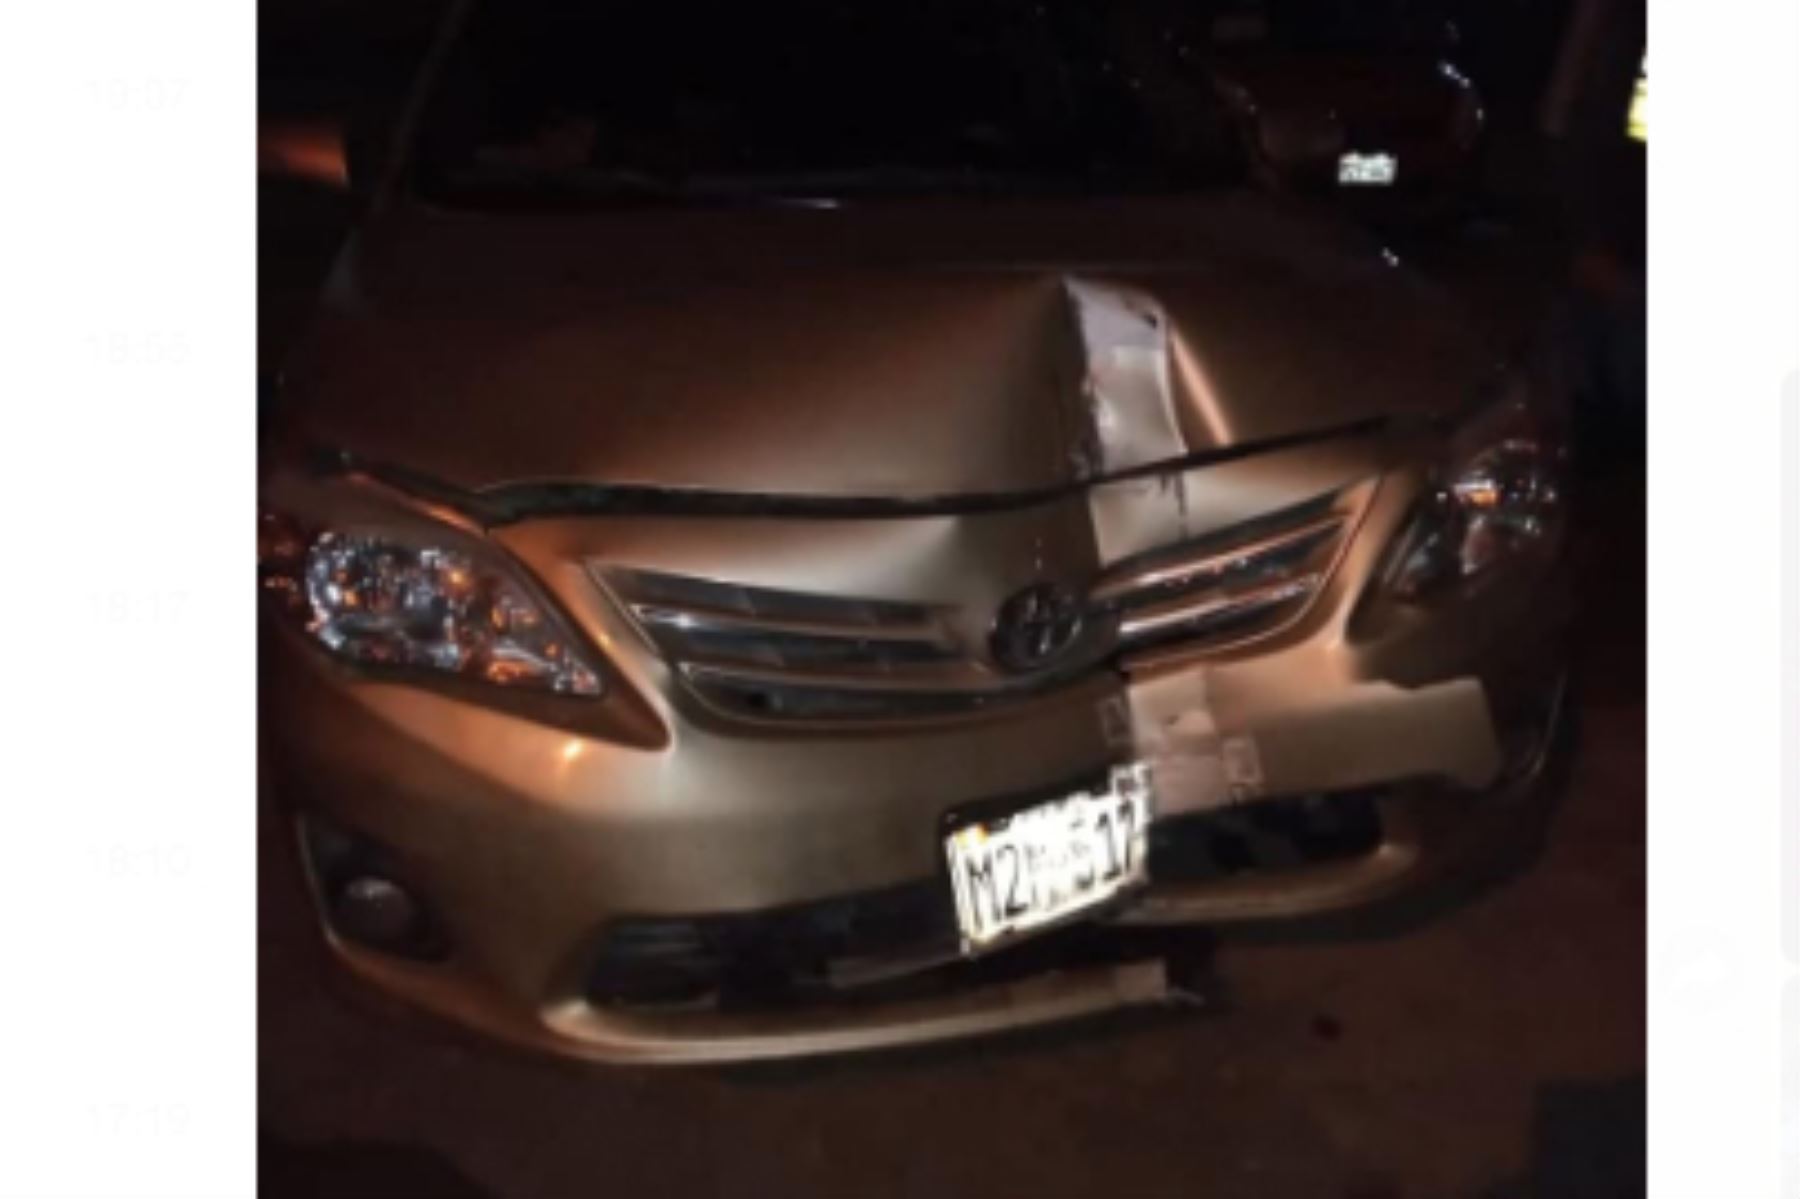 El alcalde del distrito de Pomalca, Julio Lazo Pomares, fue detenido tras chocar su auto en pleno horario de inmovilización social obligatoria.